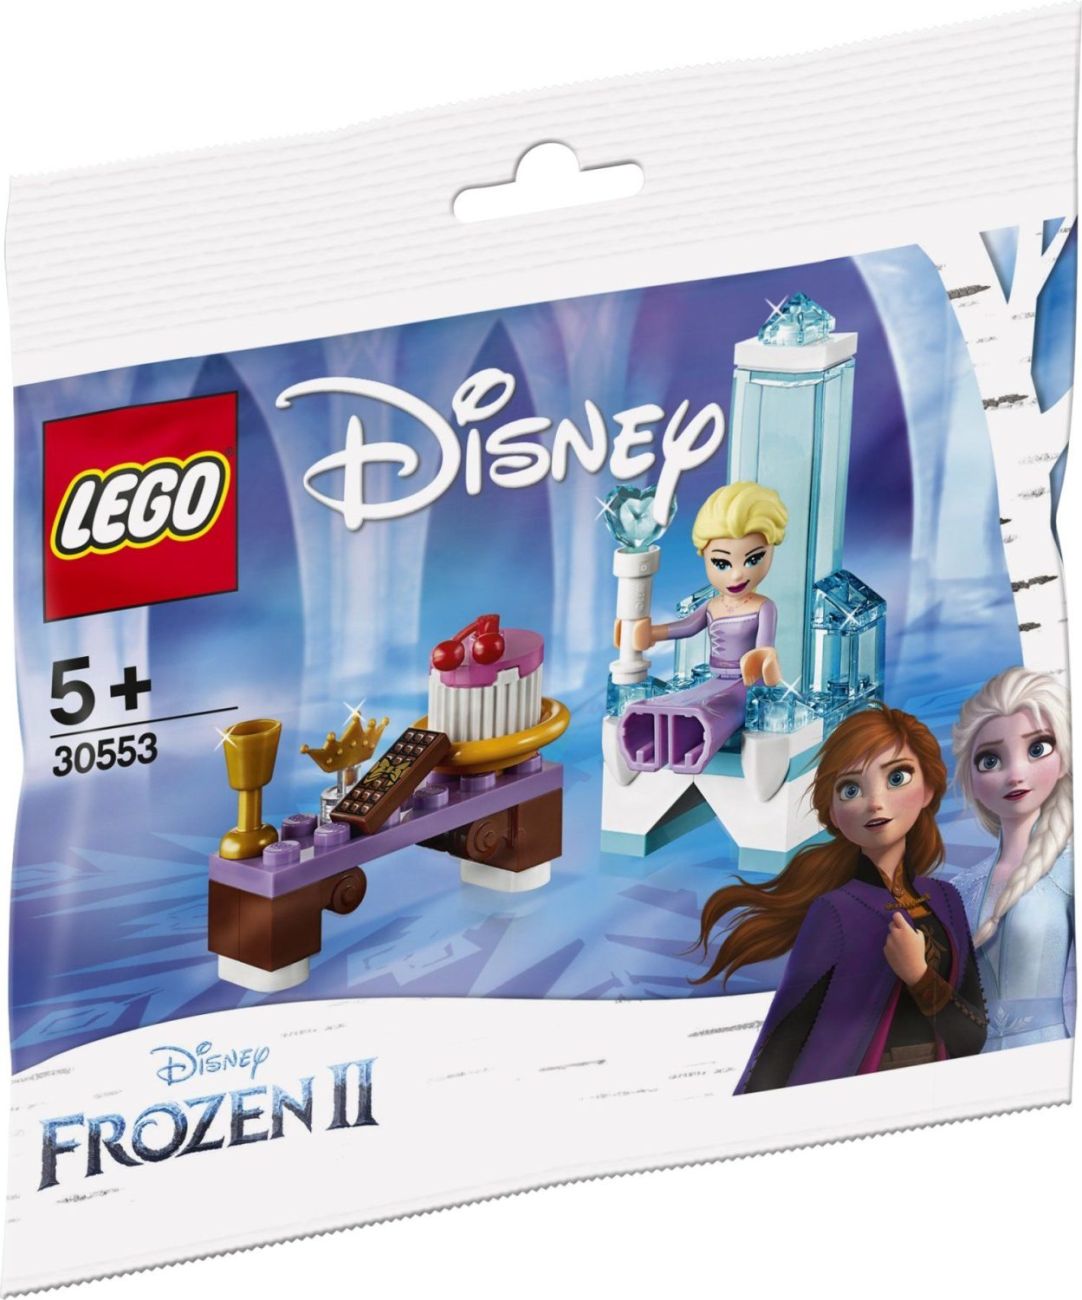 LEGO Disney Frozen 2: Ein Polybag (30553) wird kommen